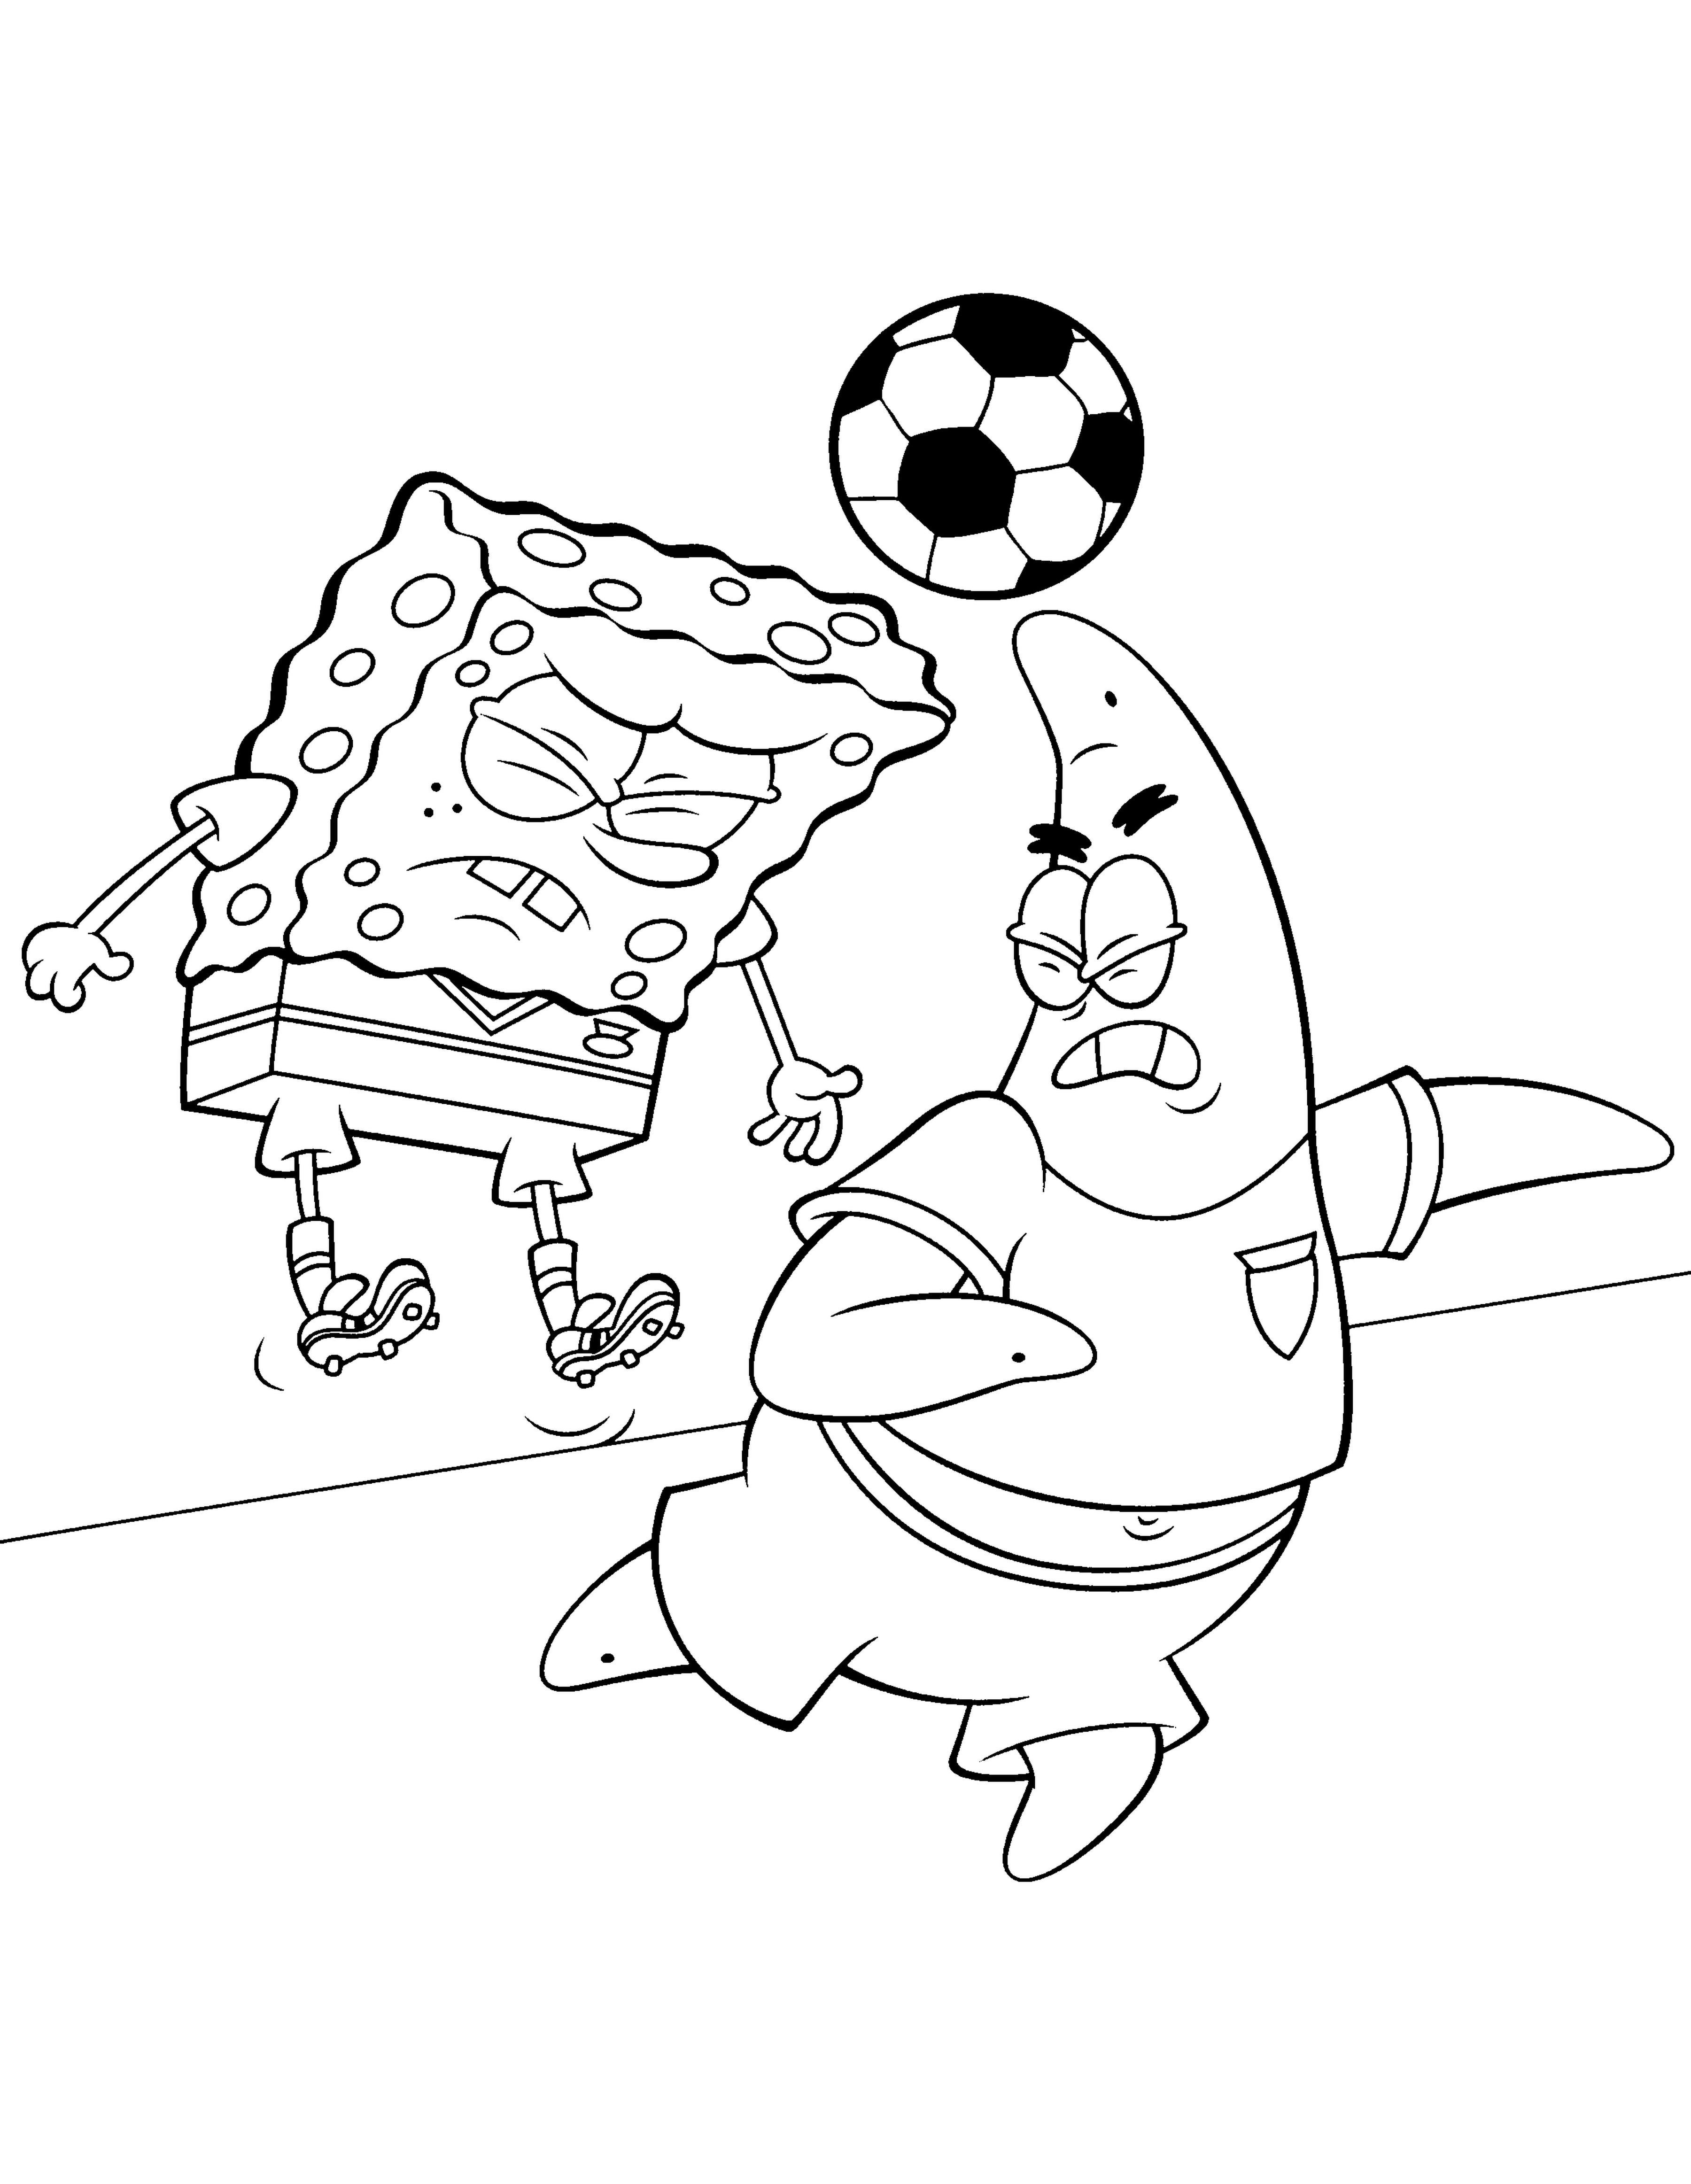 Disegno di Sponge Bob a calcio da colorare